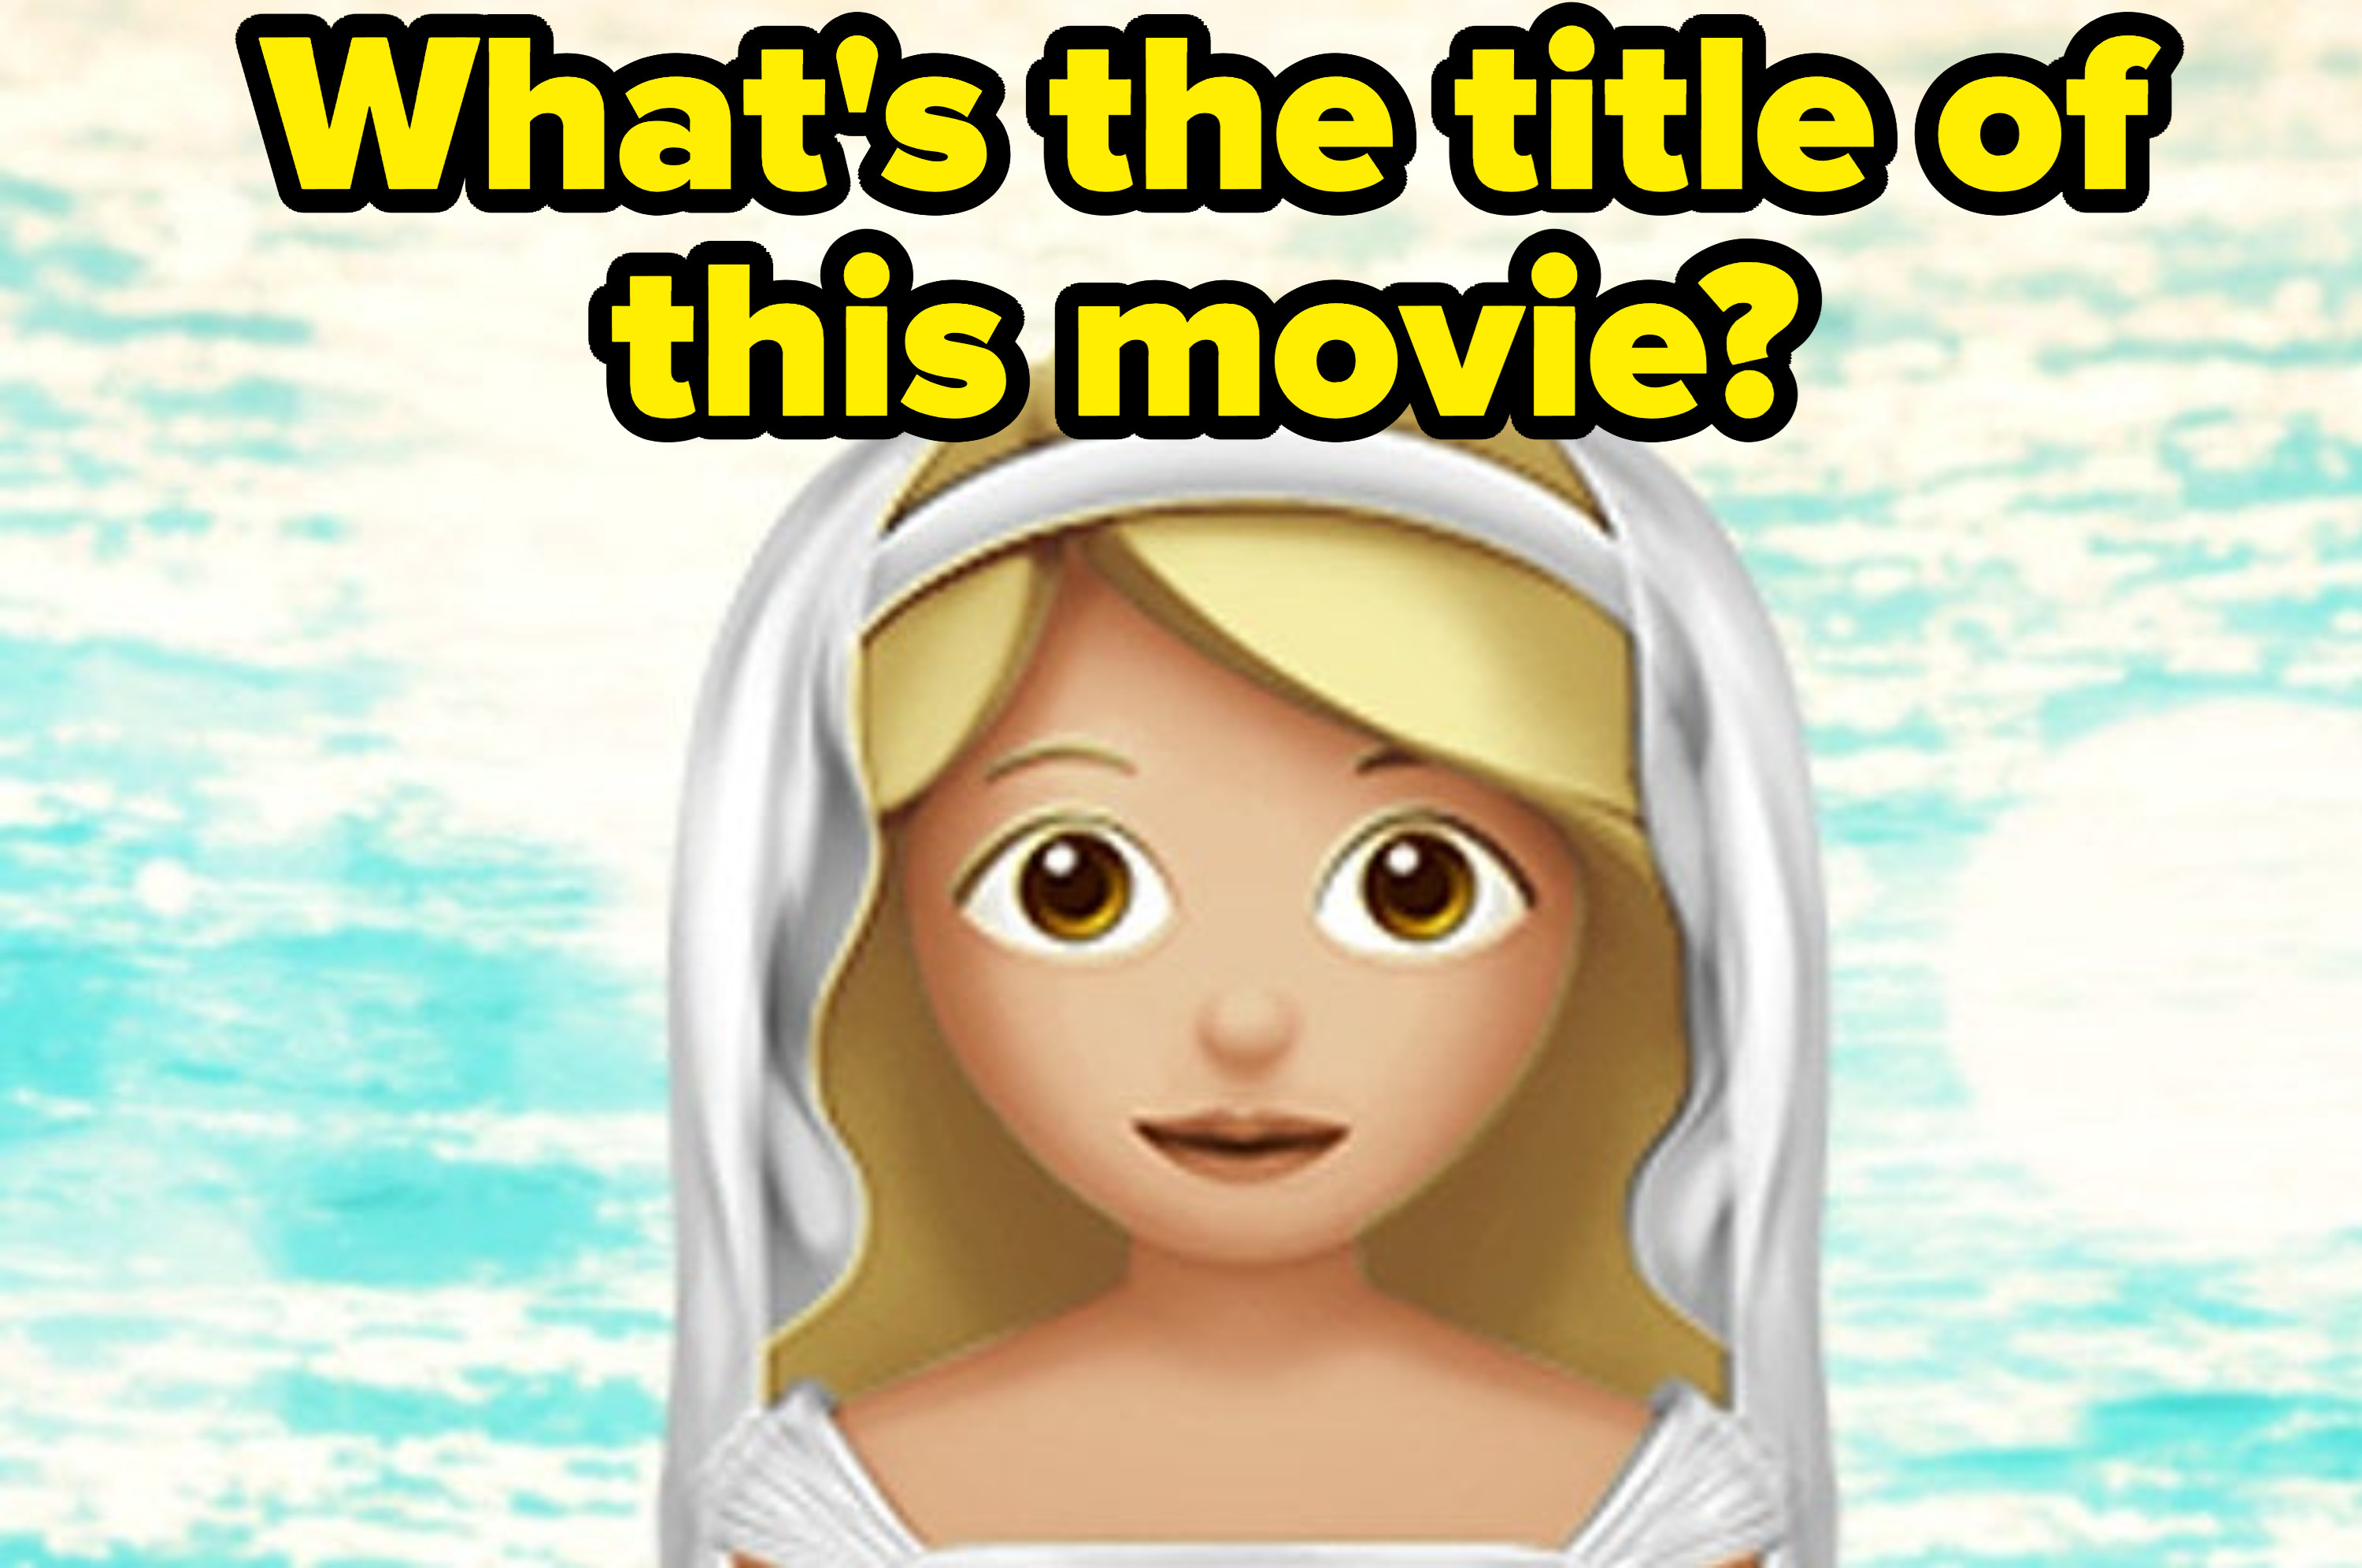 女人的emoji婚纱。在图像问题,上面写着“你们# x27;这部电影的标题?“